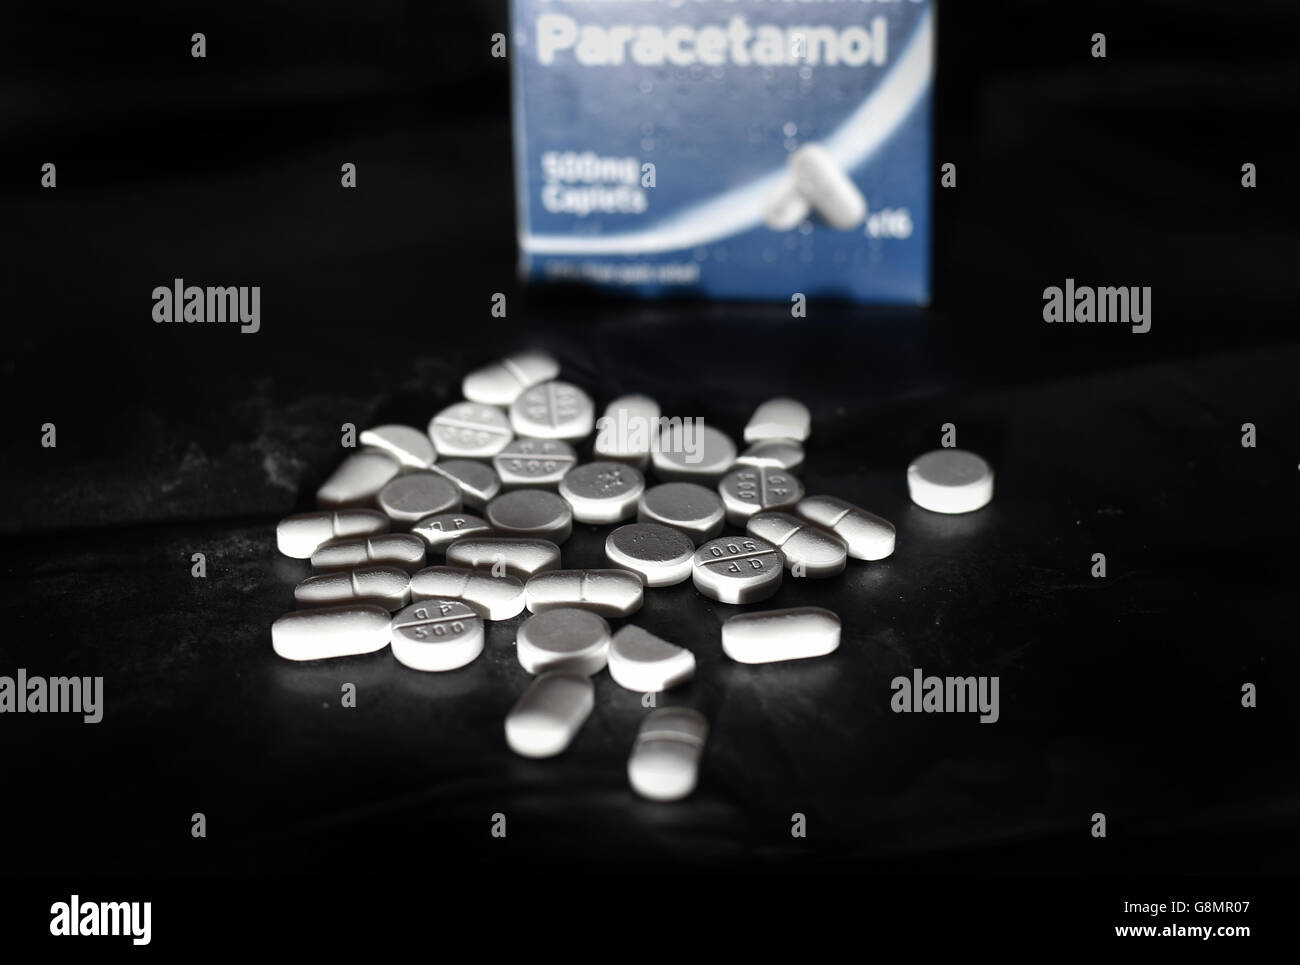 Pain killer stock. Stock photo of Paracetamol tablets. Stock Photo